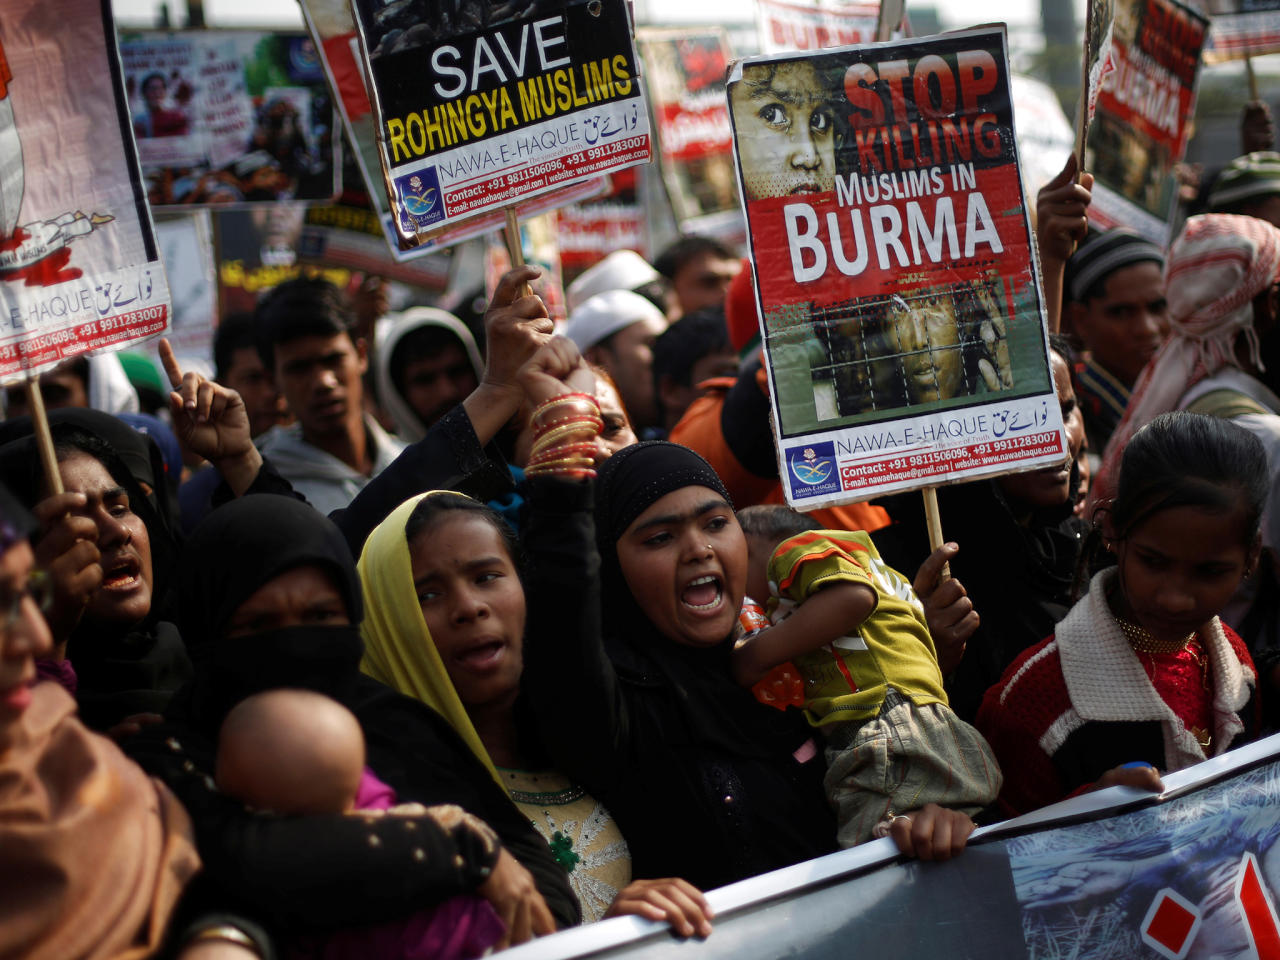 بنغلادش: 3 آلاف من مسلمي الروهينغا قُتلوا في الأحداث الأخيرة